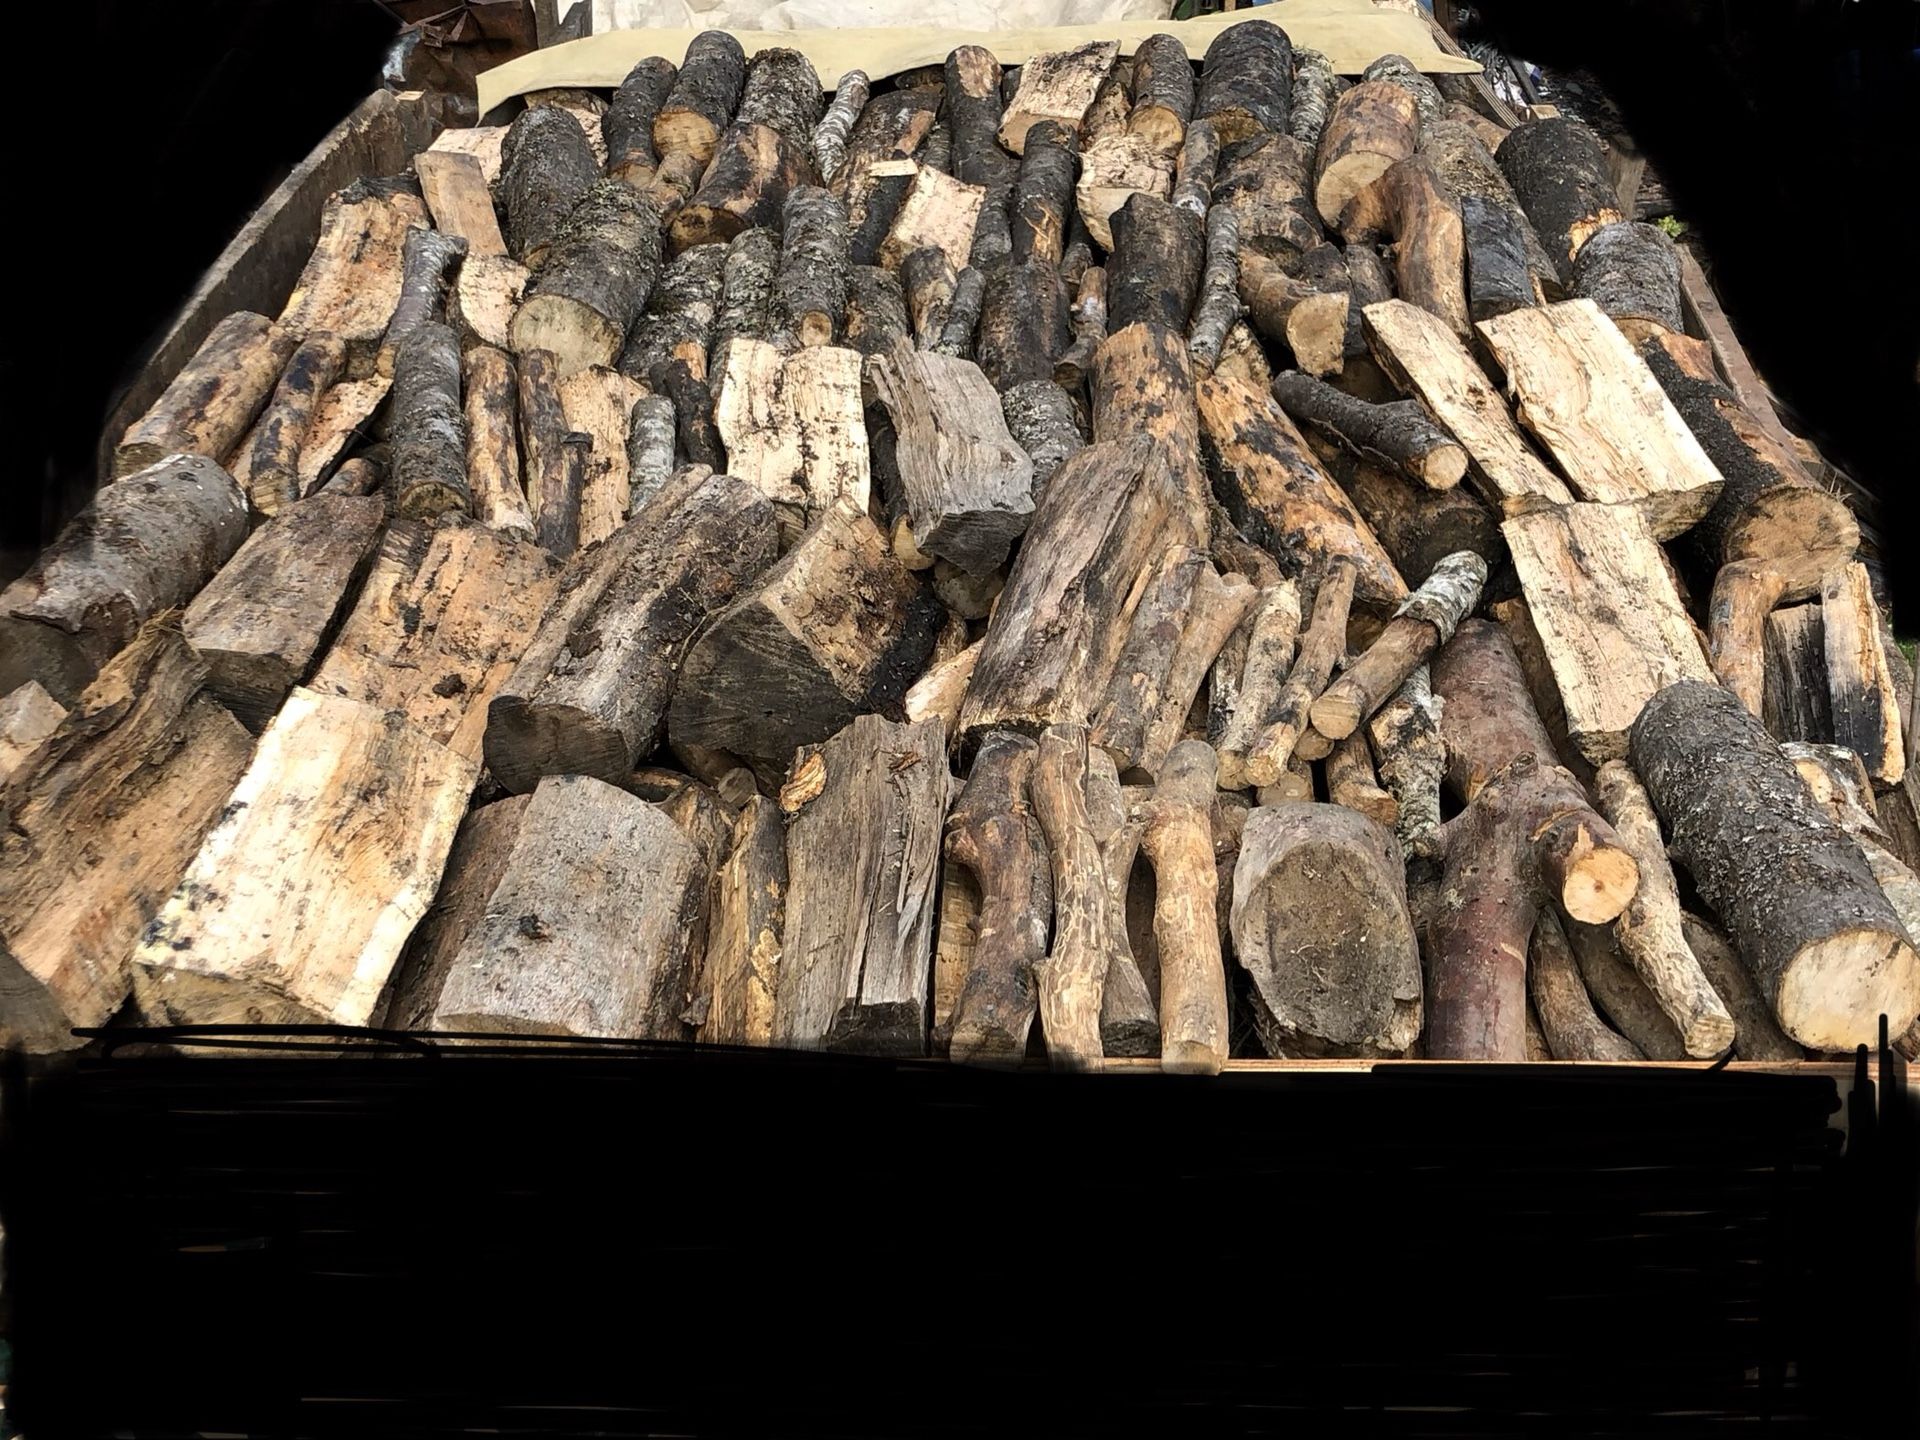 Seasoned dry firewood